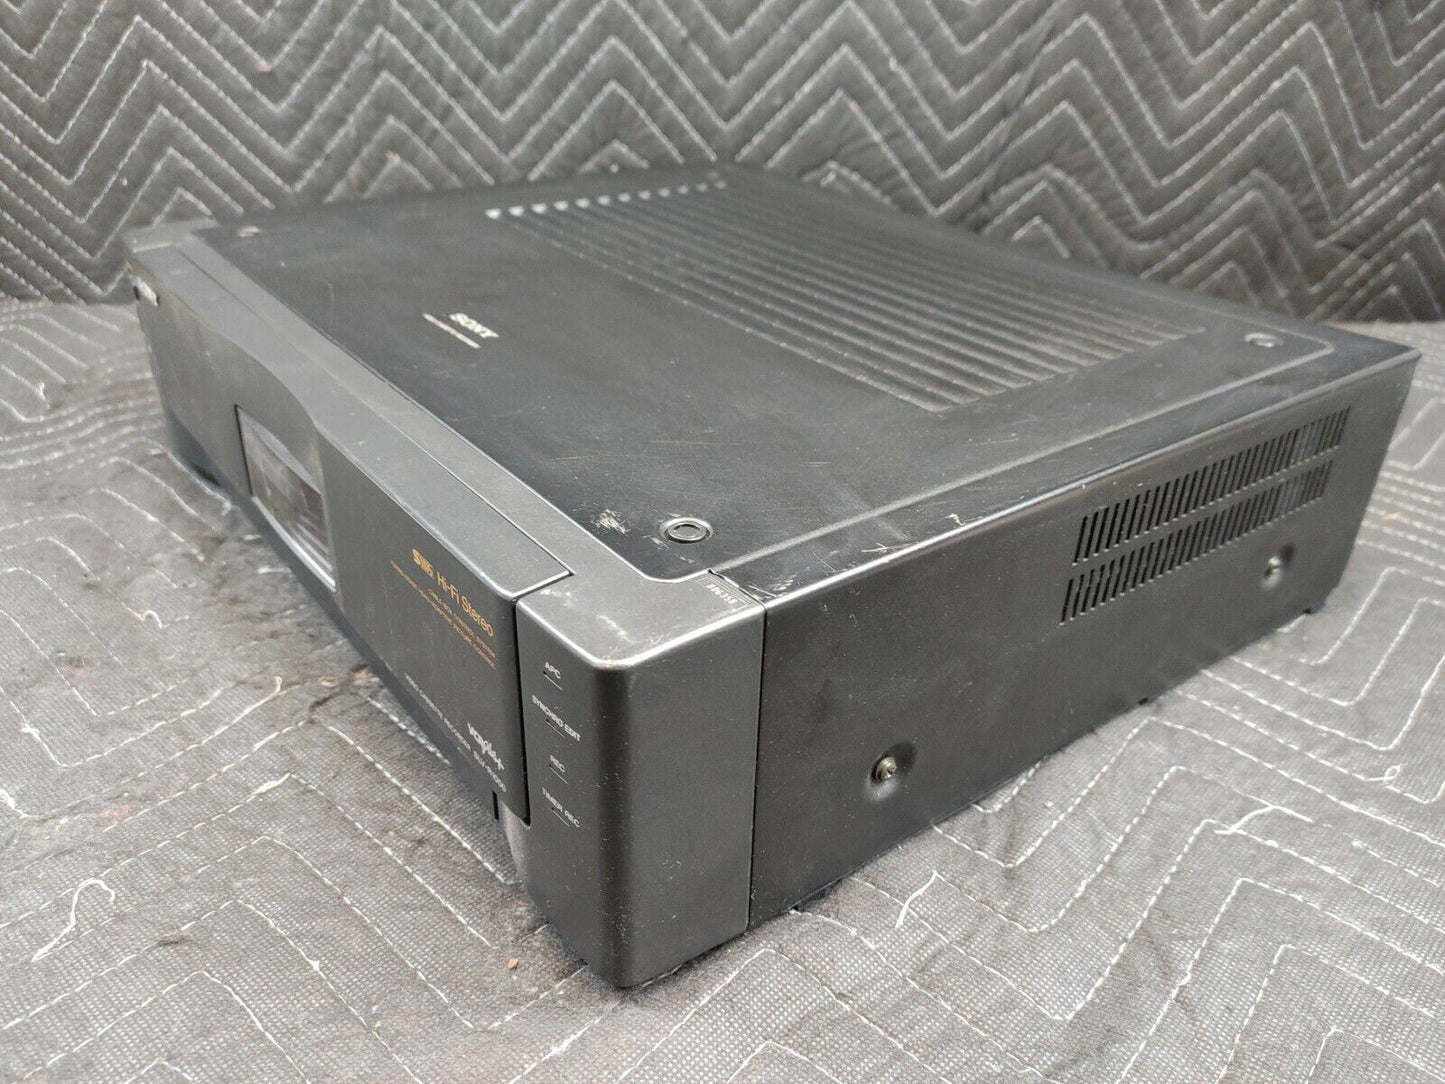 Sony SLV-R1000 Video Cassette Recorder S-VHS Hi-Fi Stereo